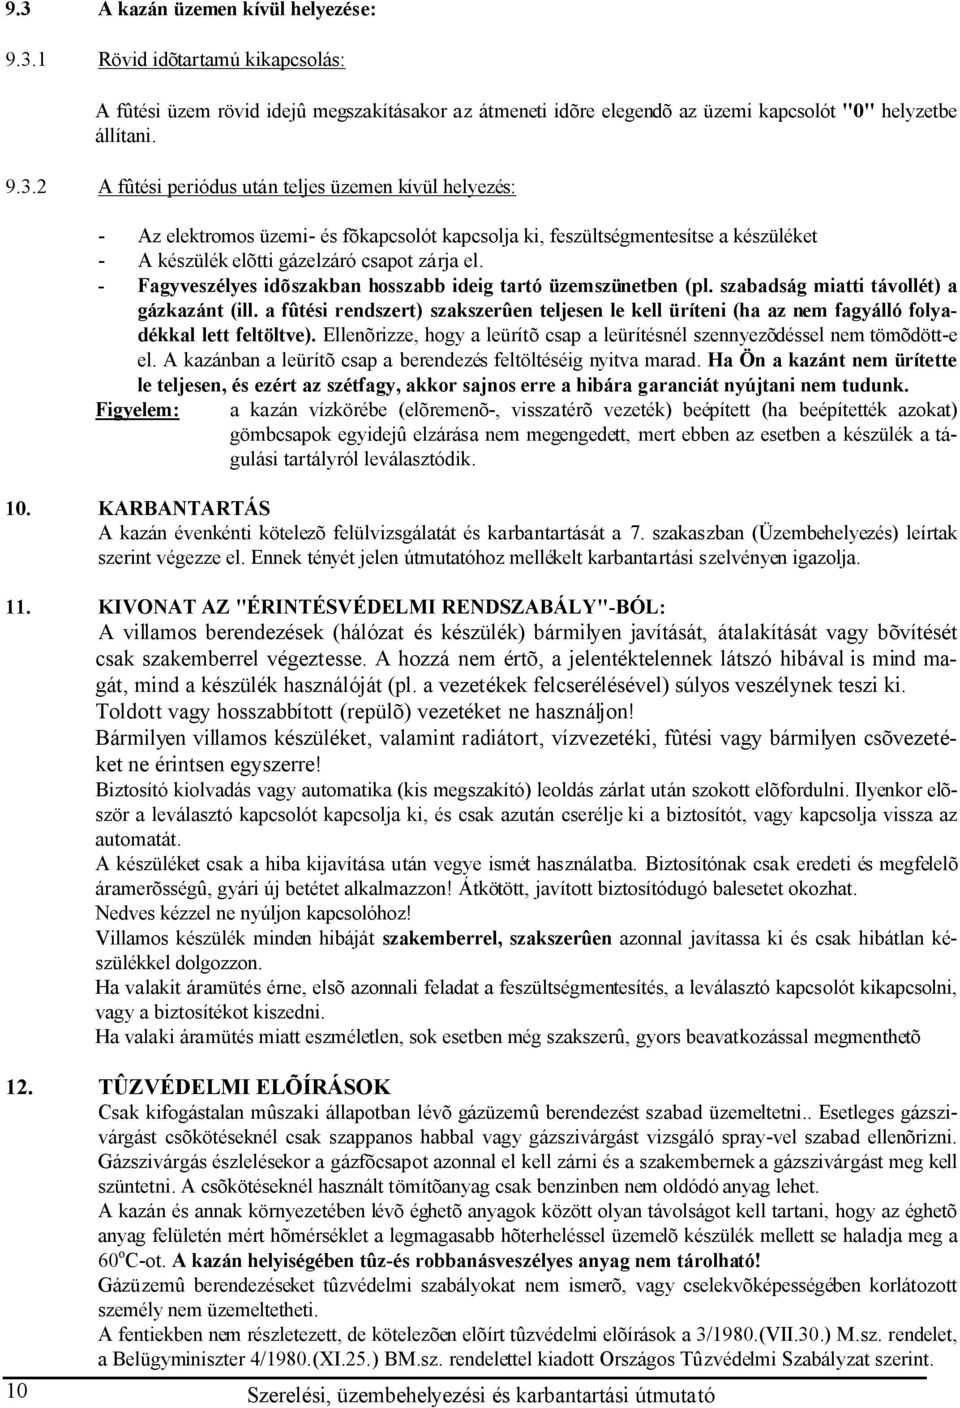 Szerelési, üzembehelyezési és karbantartási útmutató - PDF Ingyenes letöltés